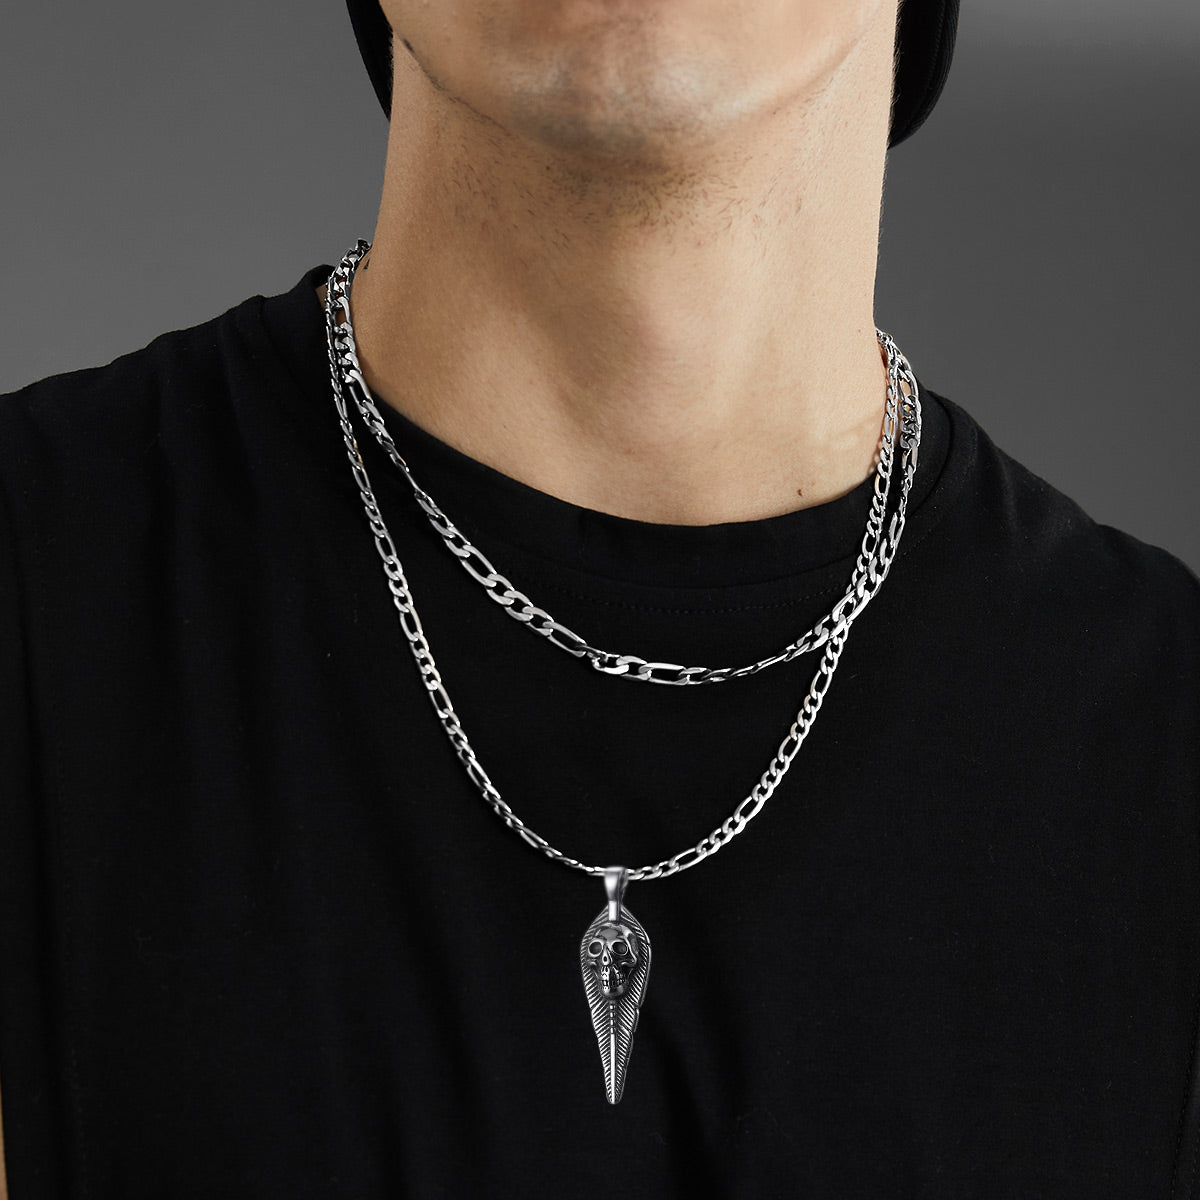 FaithHeart Leaves Skull Pendant Necklace For Men FaithHeart